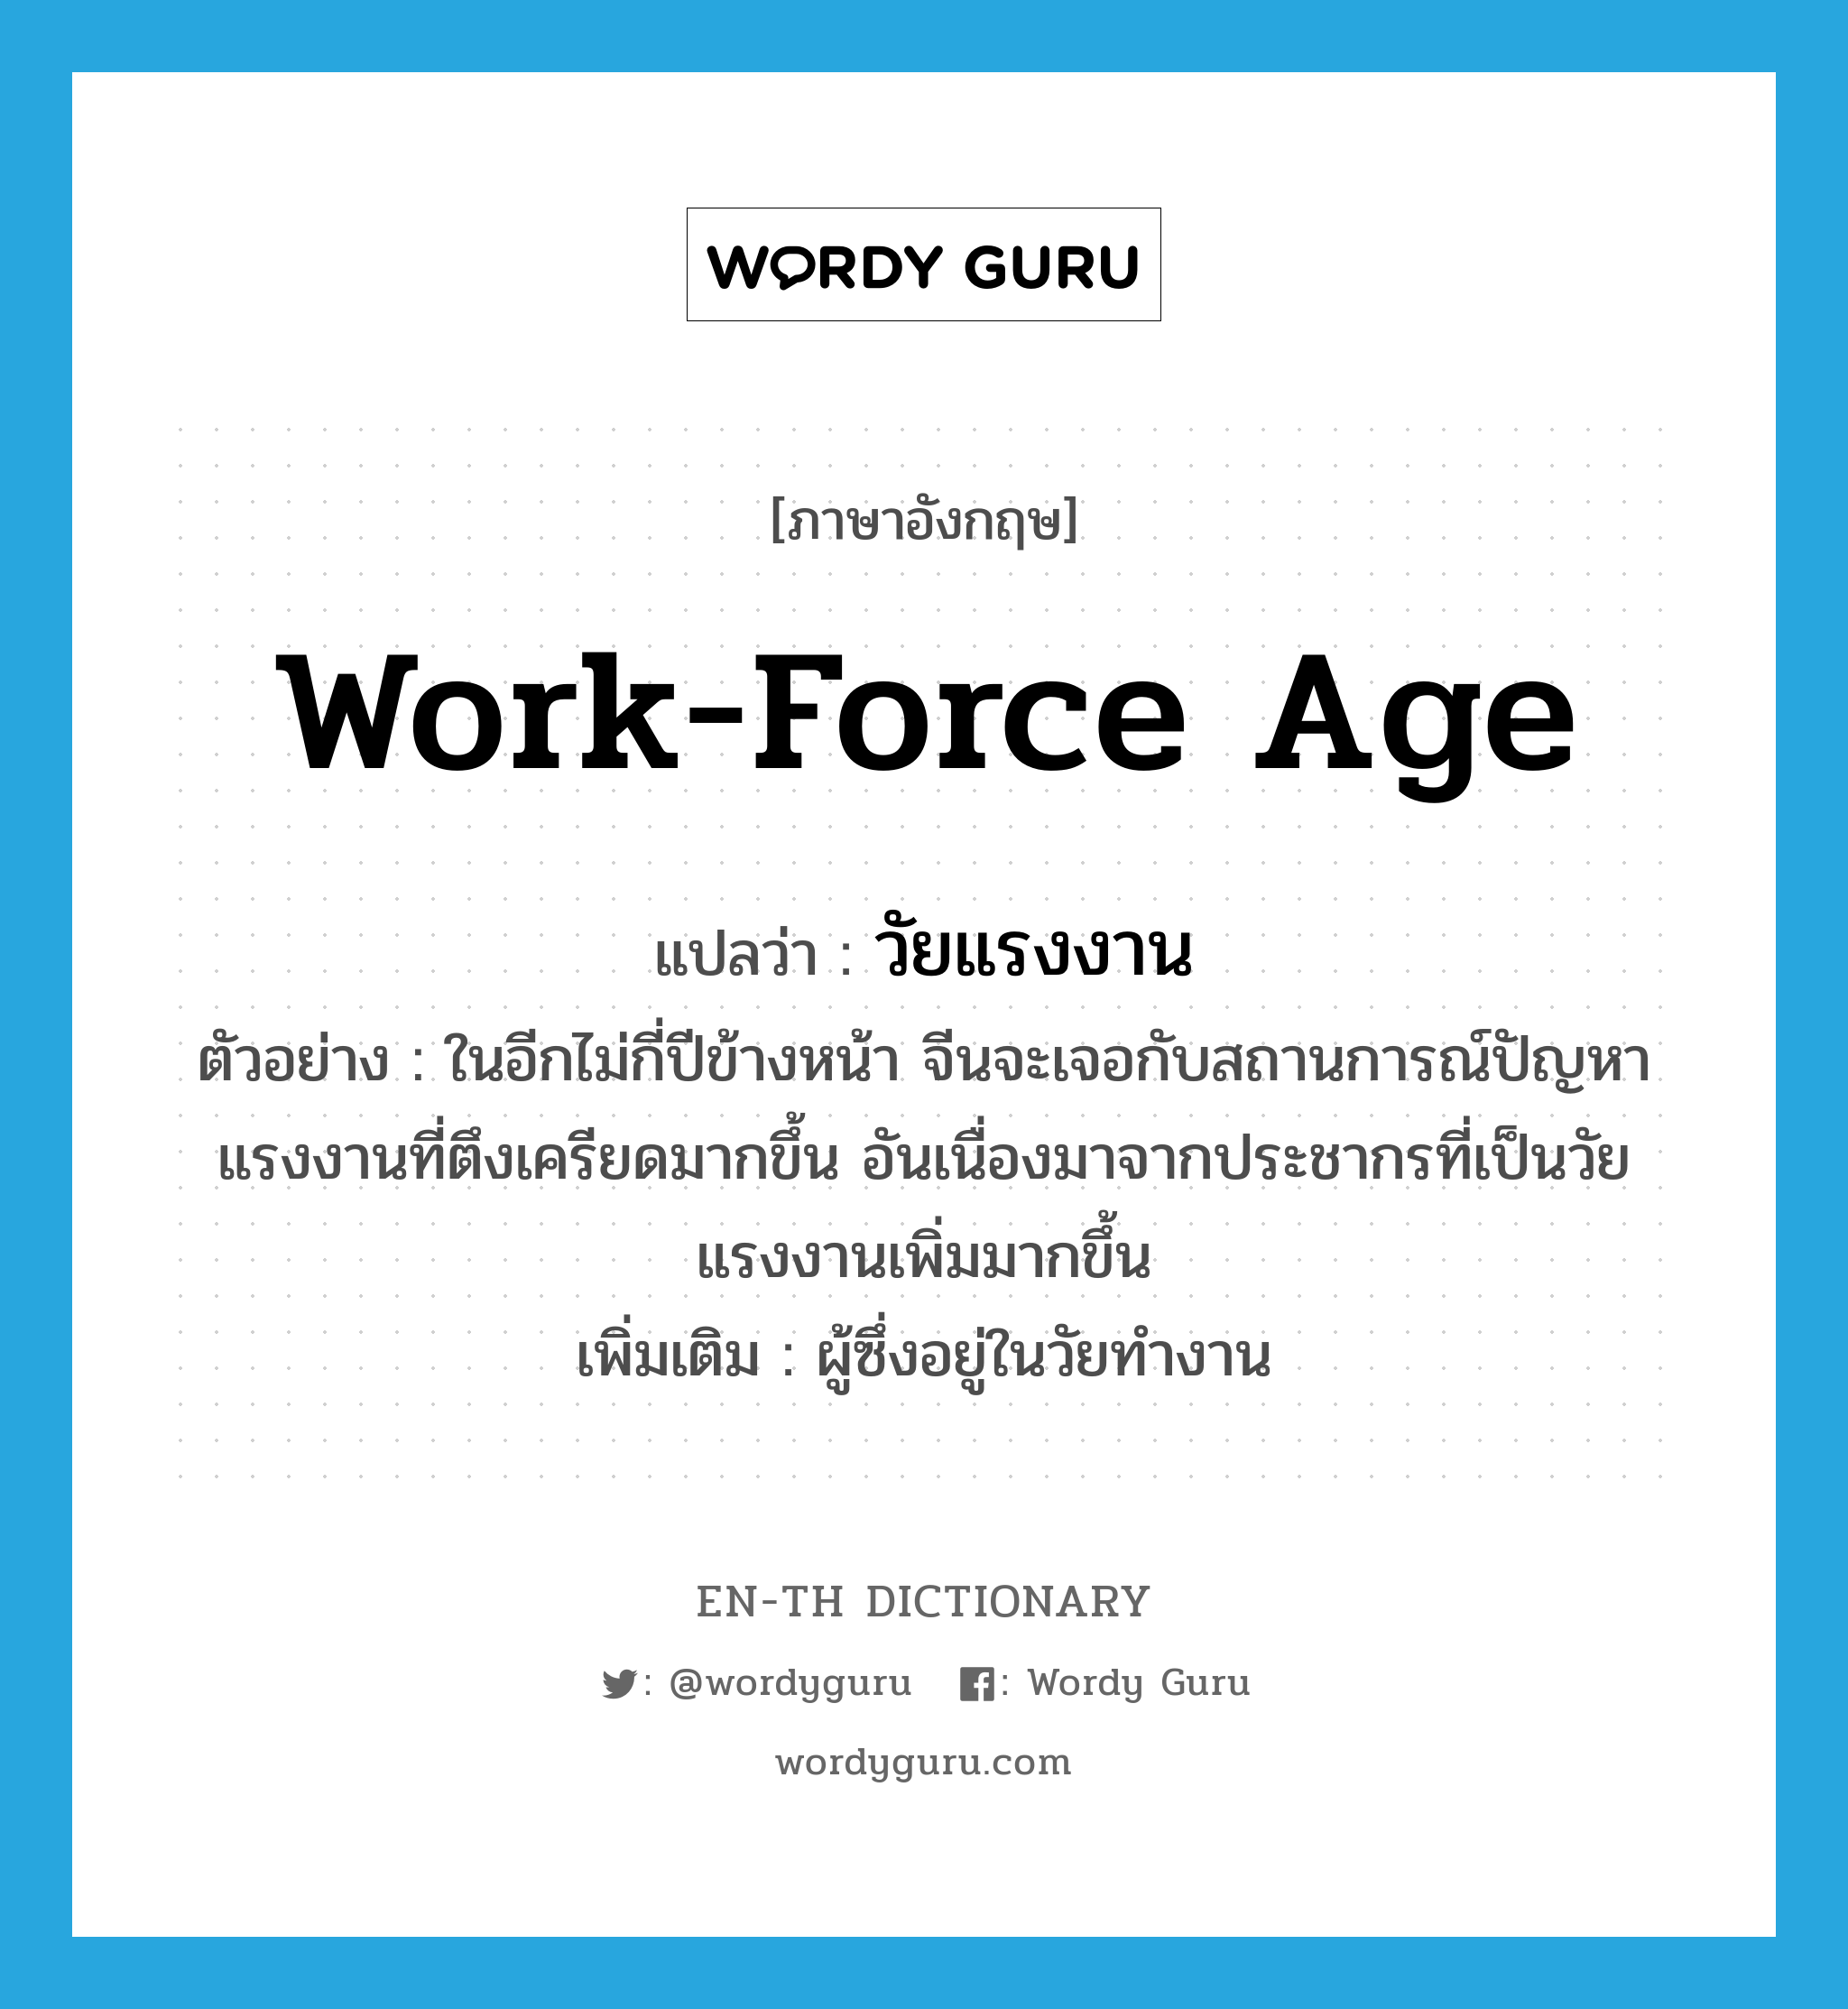 work-force age แปลว่า?, คำศัพท์ภาษาอังกฤษ work-force age แปลว่า วัยแรงงาน ประเภท N ตัวอย่าง ในอีกไม่กี่ปีข้างหน้า จีนจะเจอกับสถานการณ์ปัญหาแรงงานที่ตึงเครียดมากขึ้น อันเนื่องมาจากประชากรที่เป็นวัยแรงงานเพิ่มมากขึ้น เพิ่มเติม ผู้ซึ่งอยู่ในวัยทำงาน หมวด N